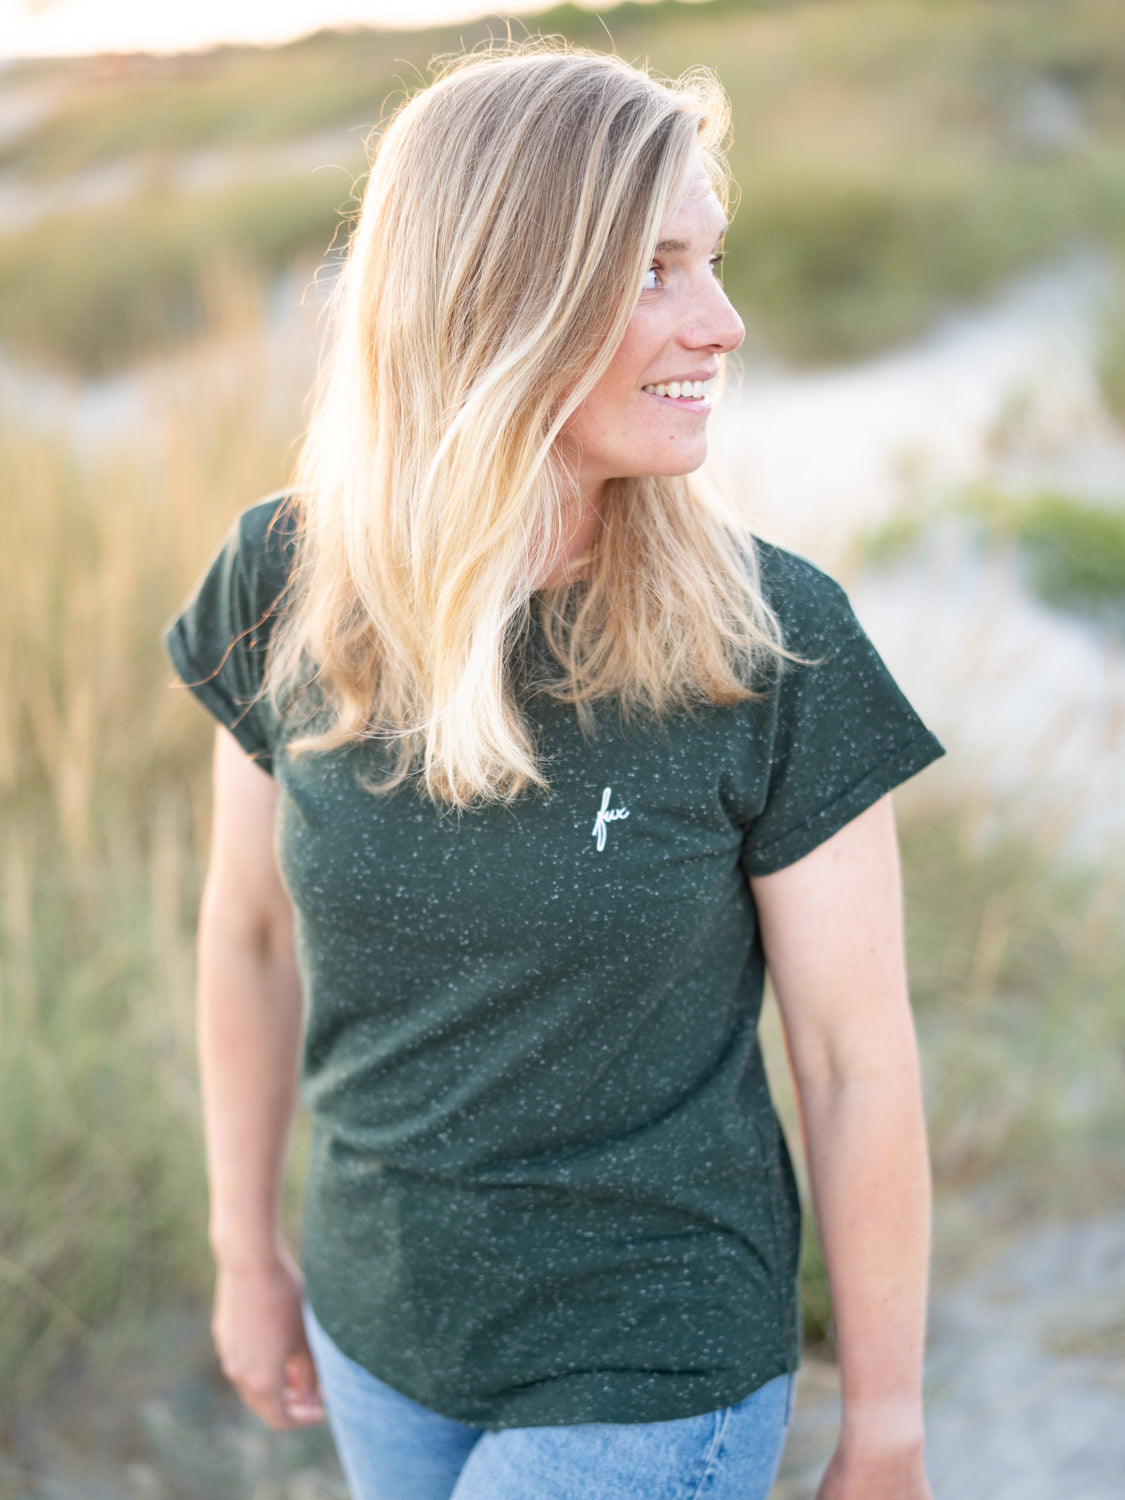 FUXBAU Fair Fashion Frauen T-Shirt in grün aus Biobaumwollen mit weißen Punkten getragen von einer jungen blonden Frau am Strand.